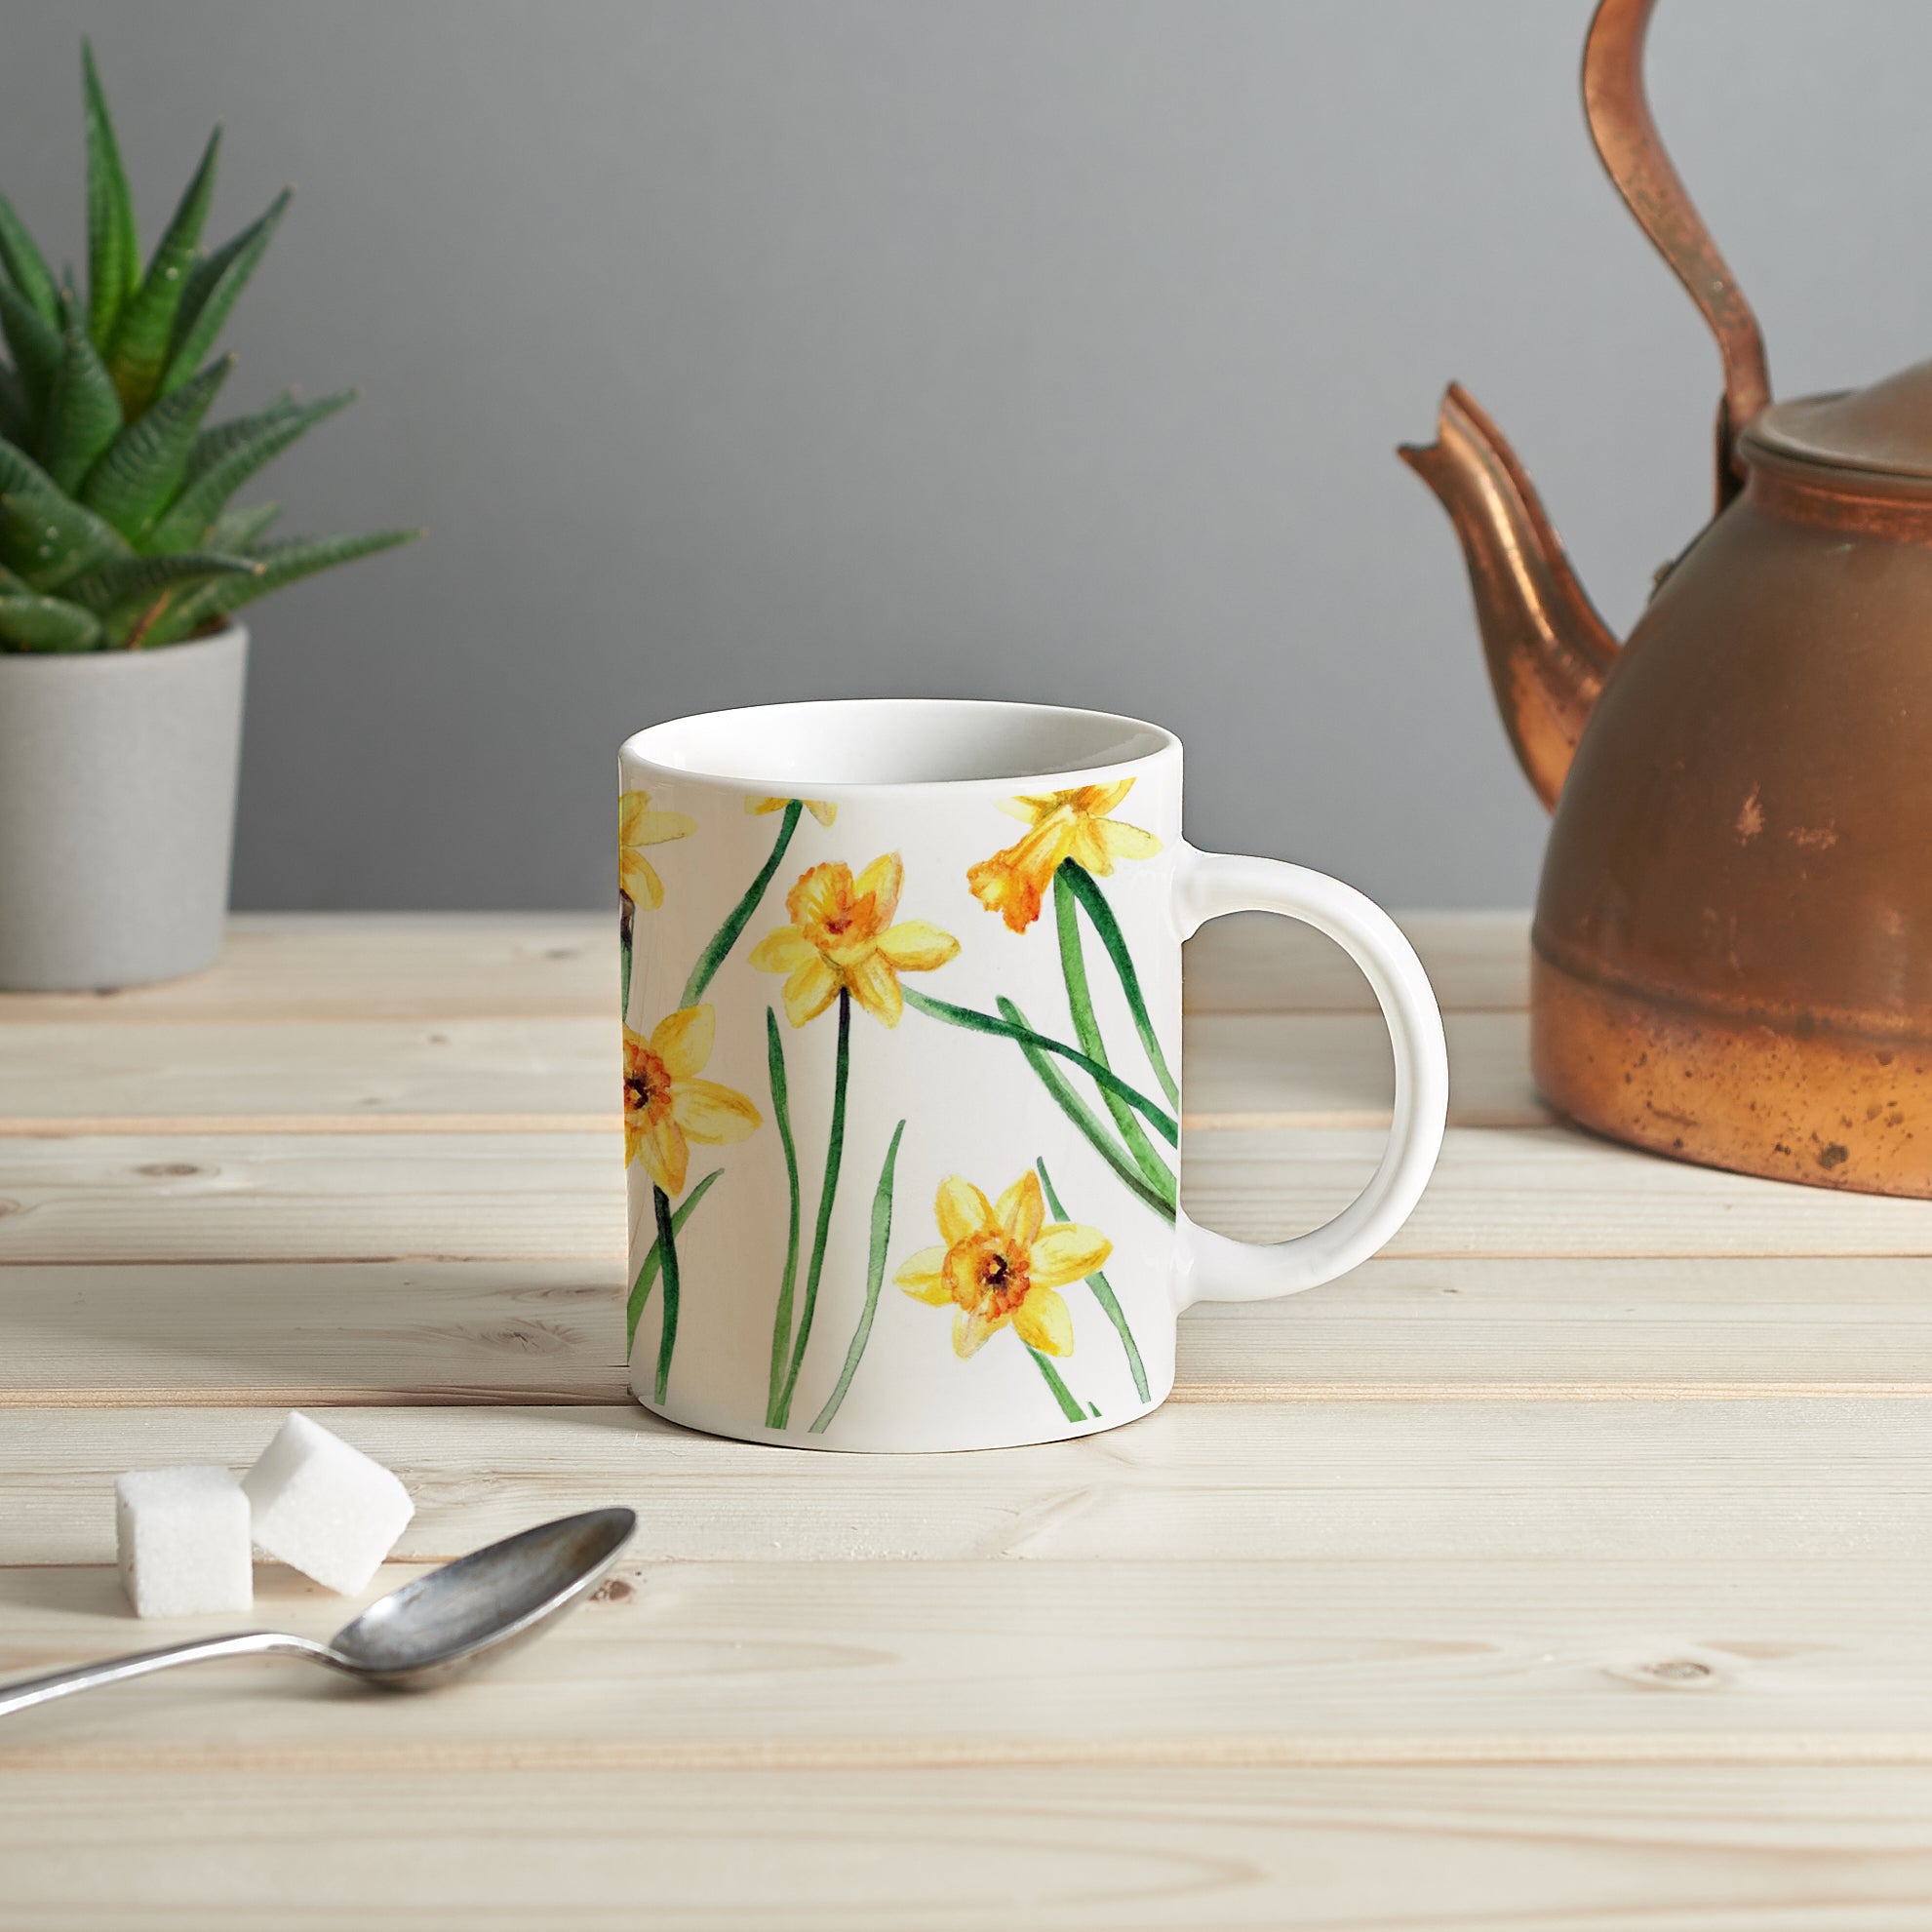 Daffodil mug